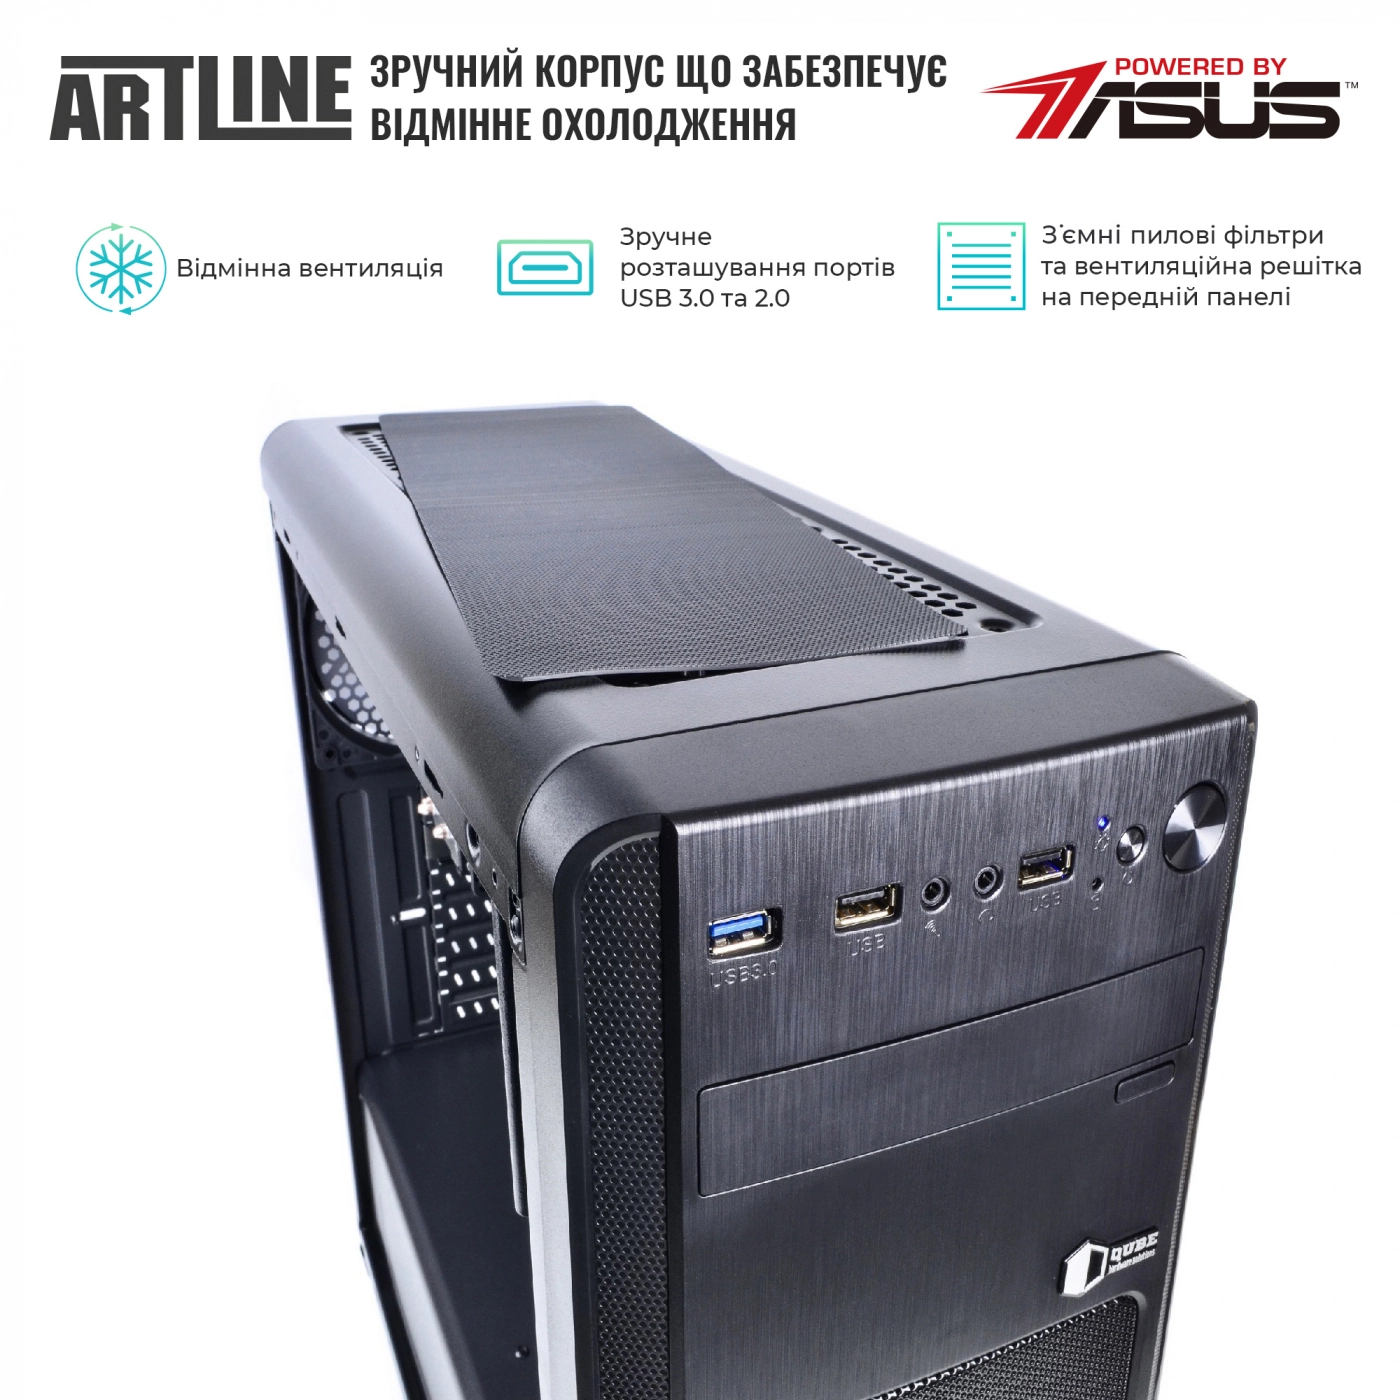 Купить Сервер ARTLINE Business T15v19 - фото 2